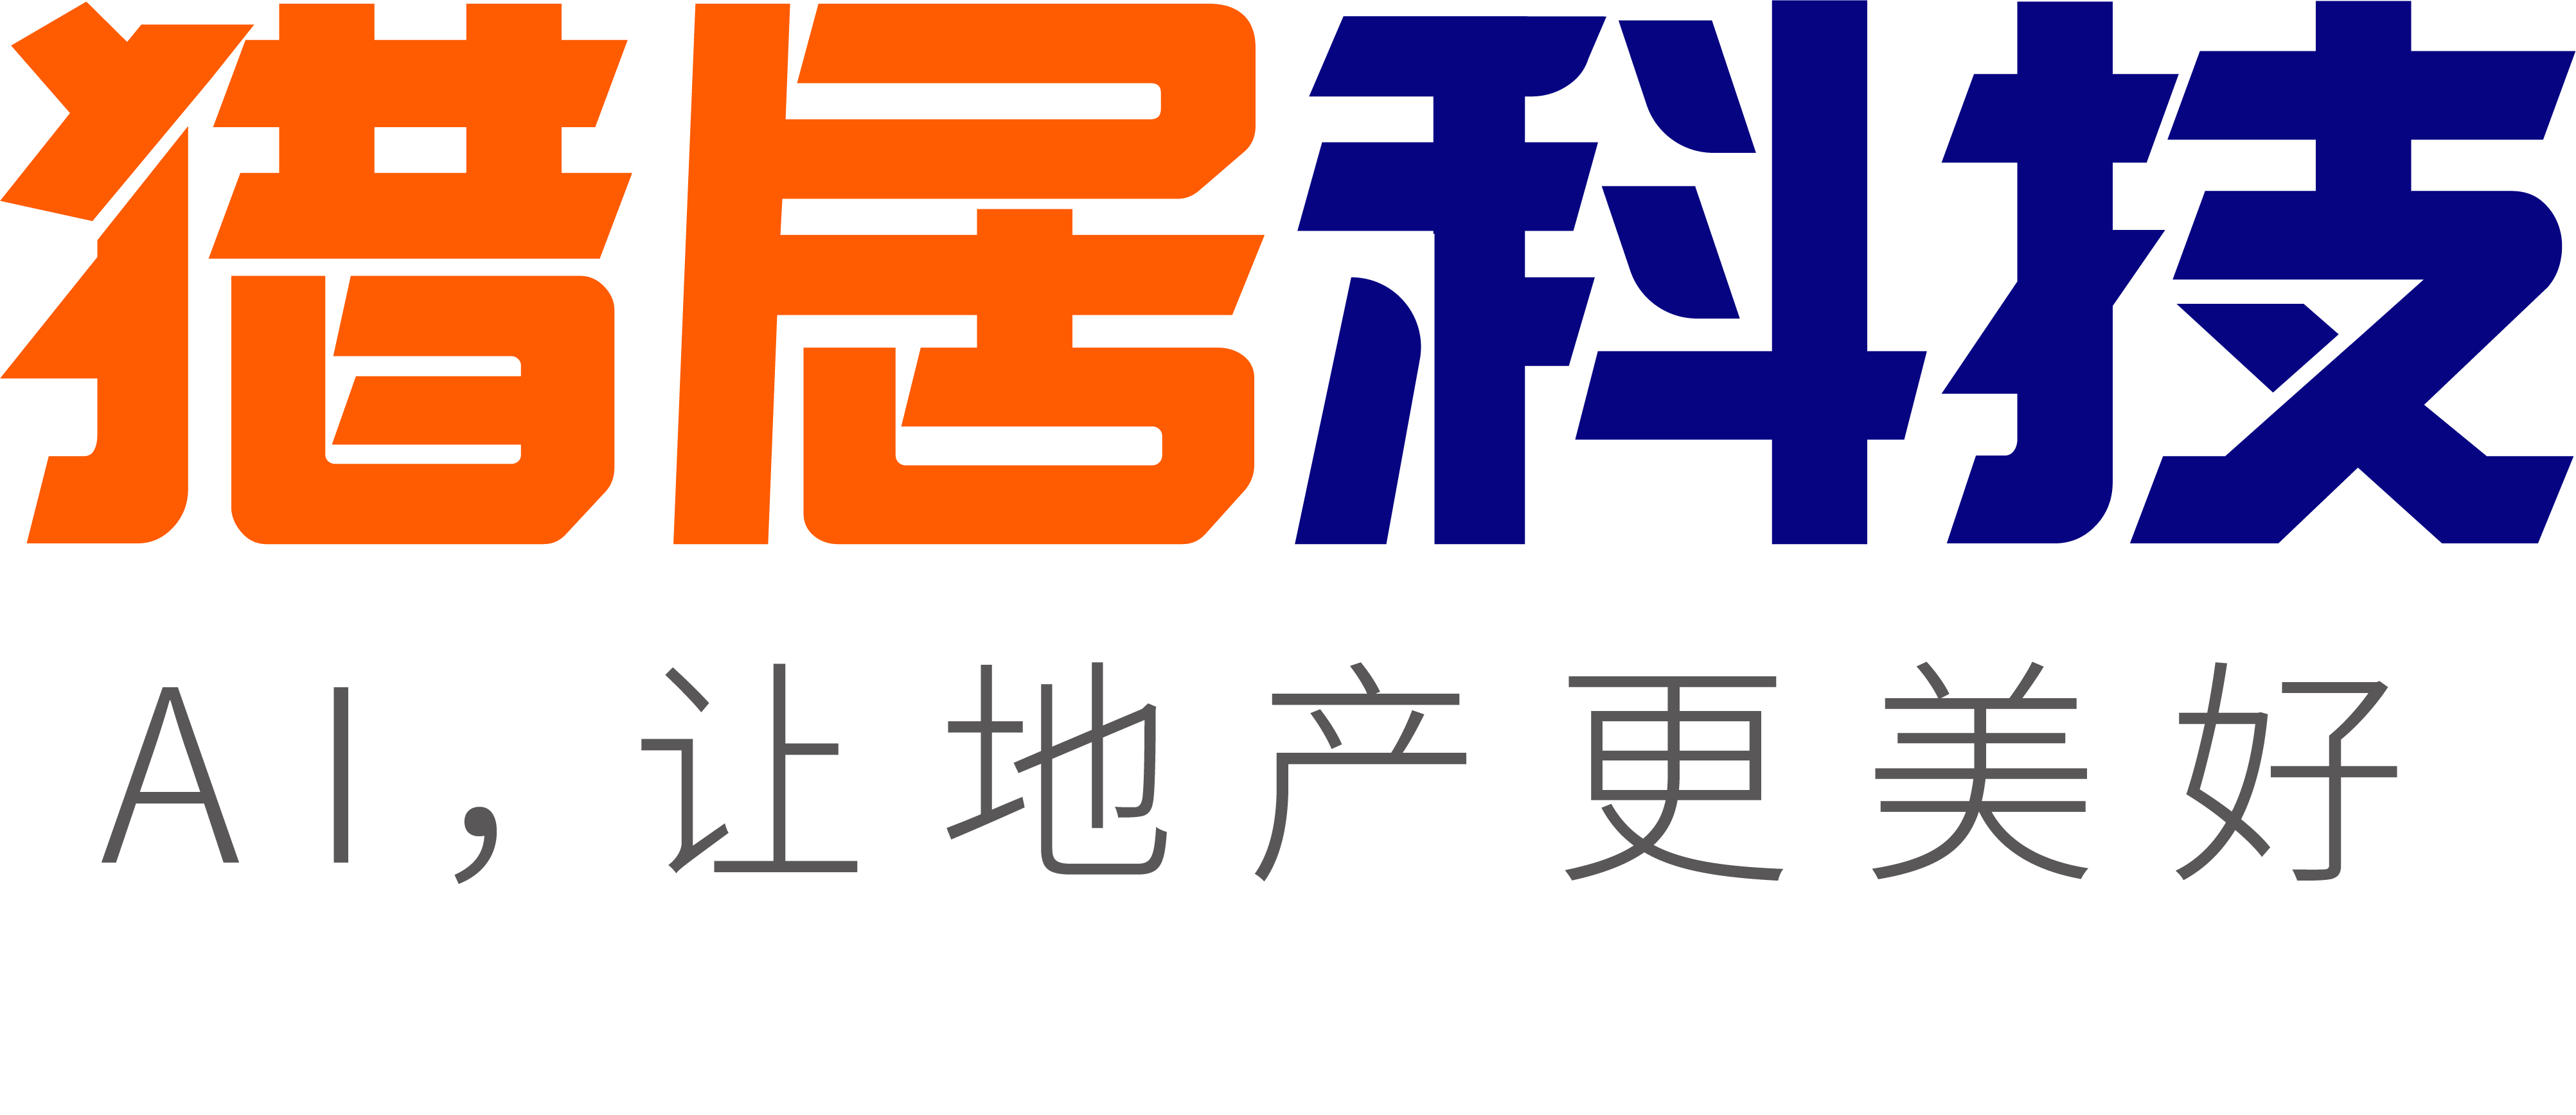 附件2 猎居科技logo.png